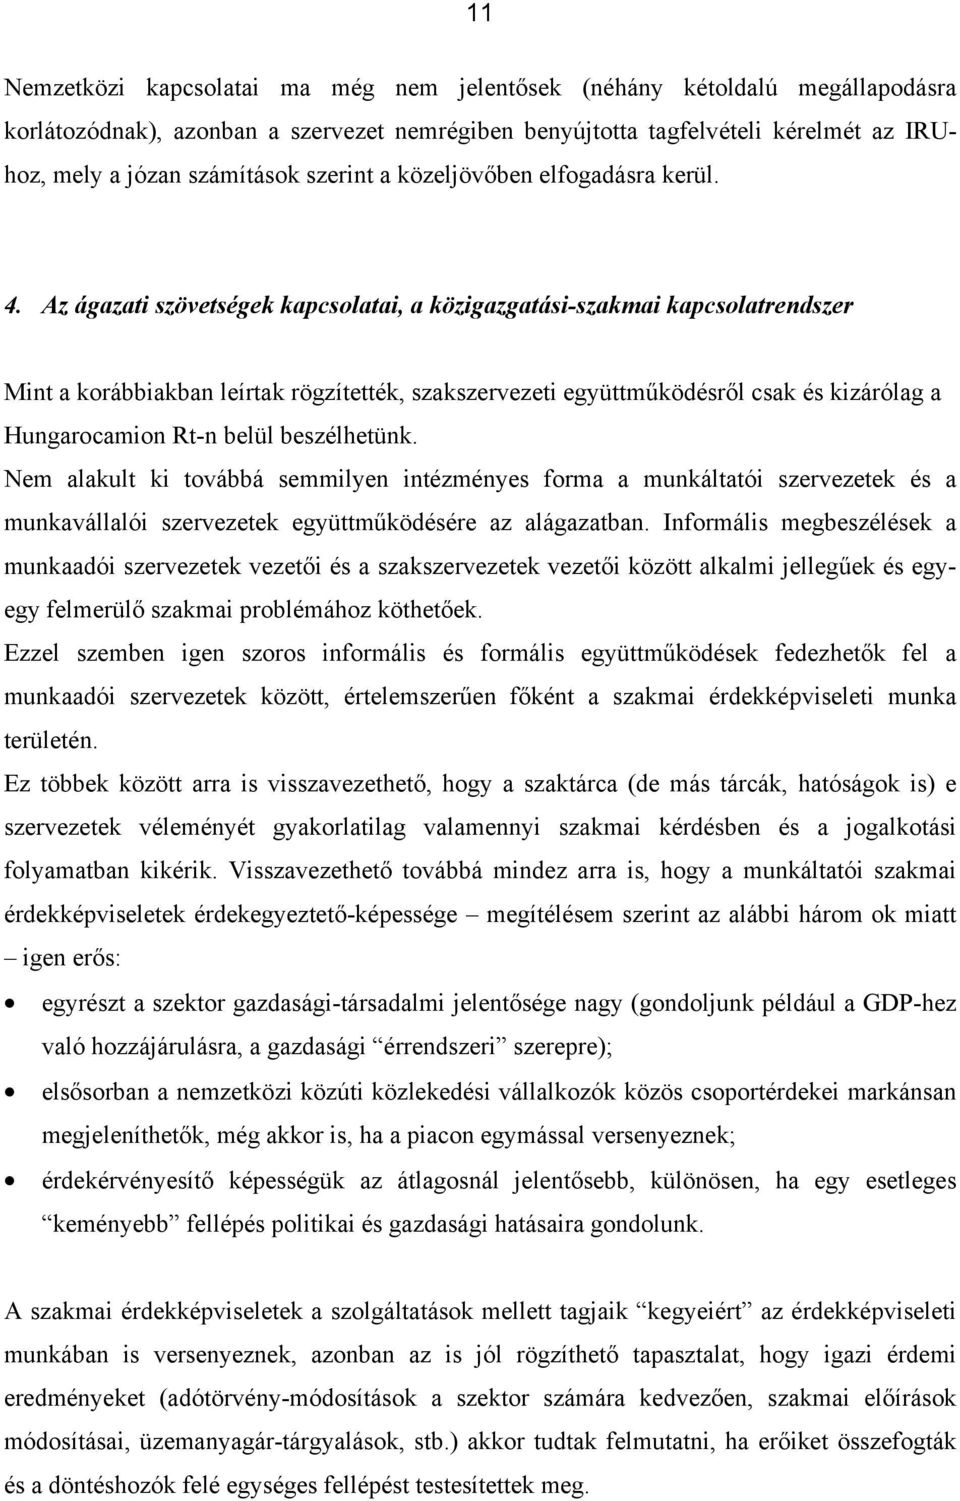 Az ágazati szövetségek kapcsolatai, a közigazgatási-szakmai kapcsolatrendszer Mint a korábbiakban leírtak rögzítették, szakszervezeti együttműködésről csak és kizárólag a Hungarocamion Rt-n belül